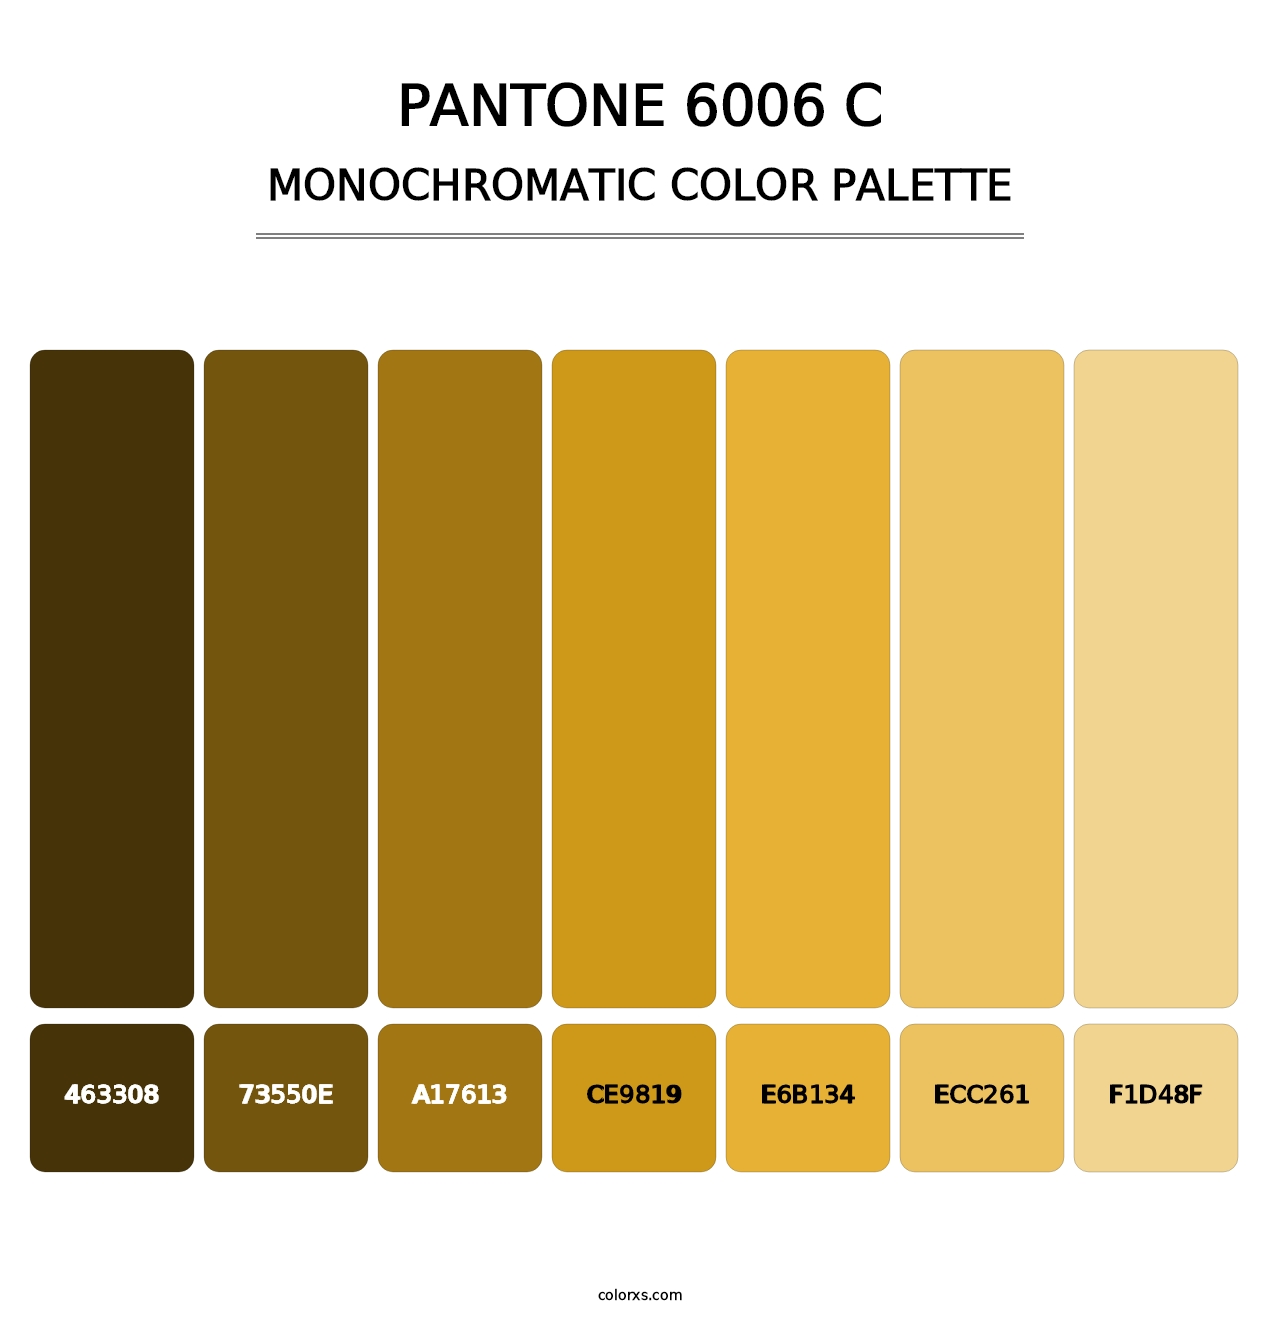 PANTONE 6006 C - Monochromatic Color Palette